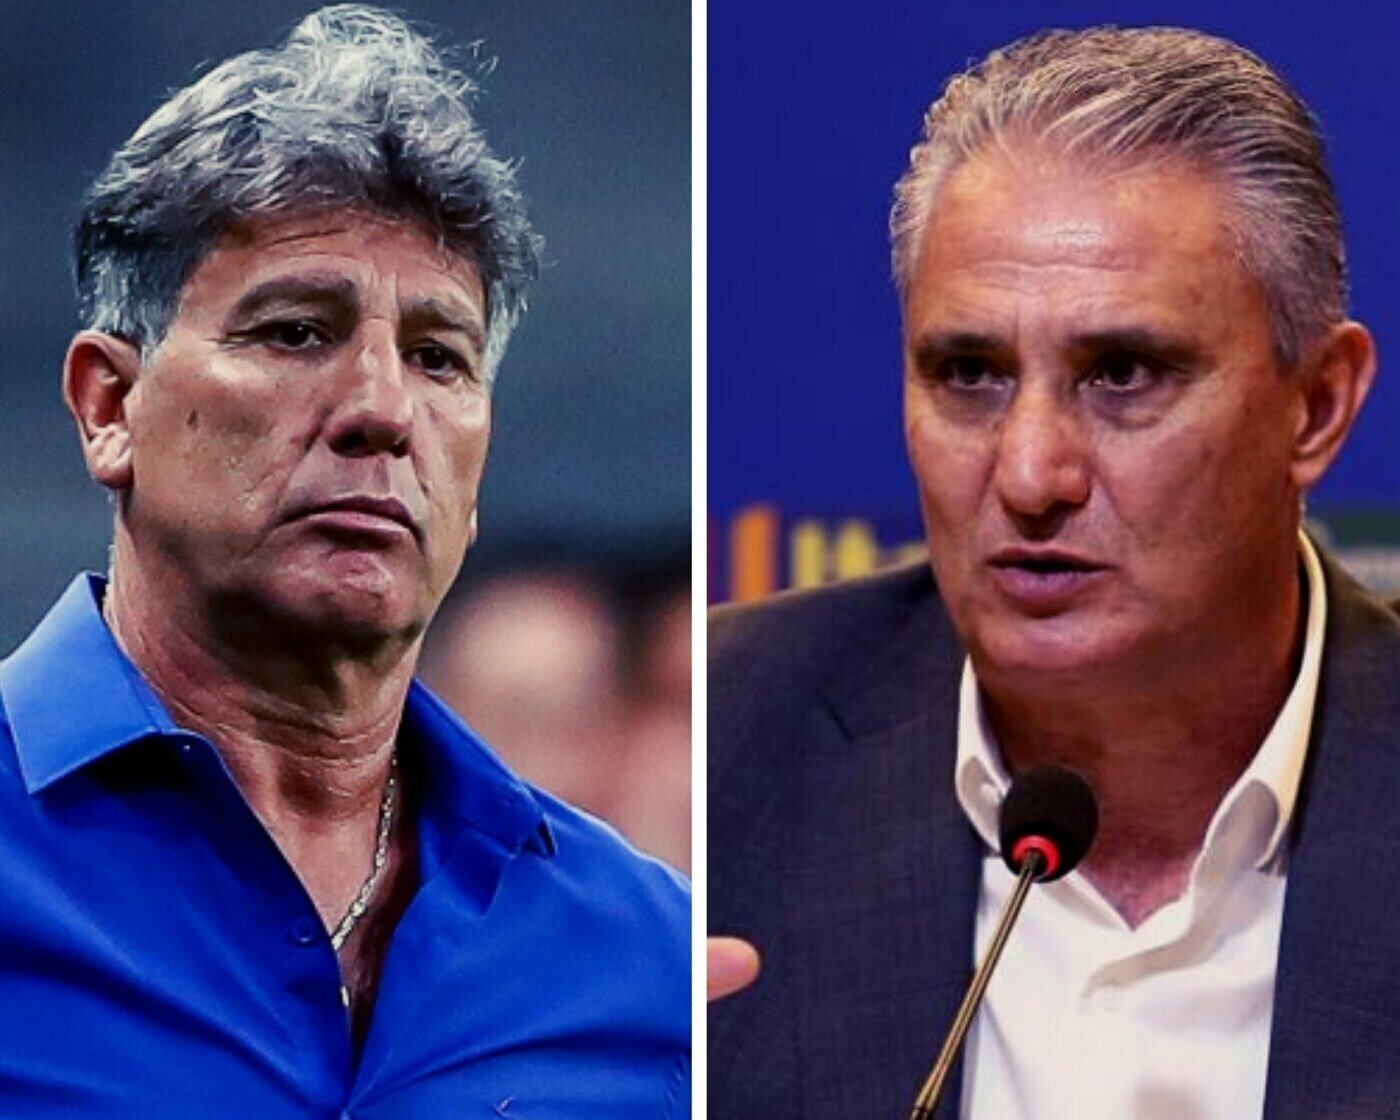 Seleção: Tite será demitido para Renato Gaúcho assumir, promete Caboclo a Bolsonaro